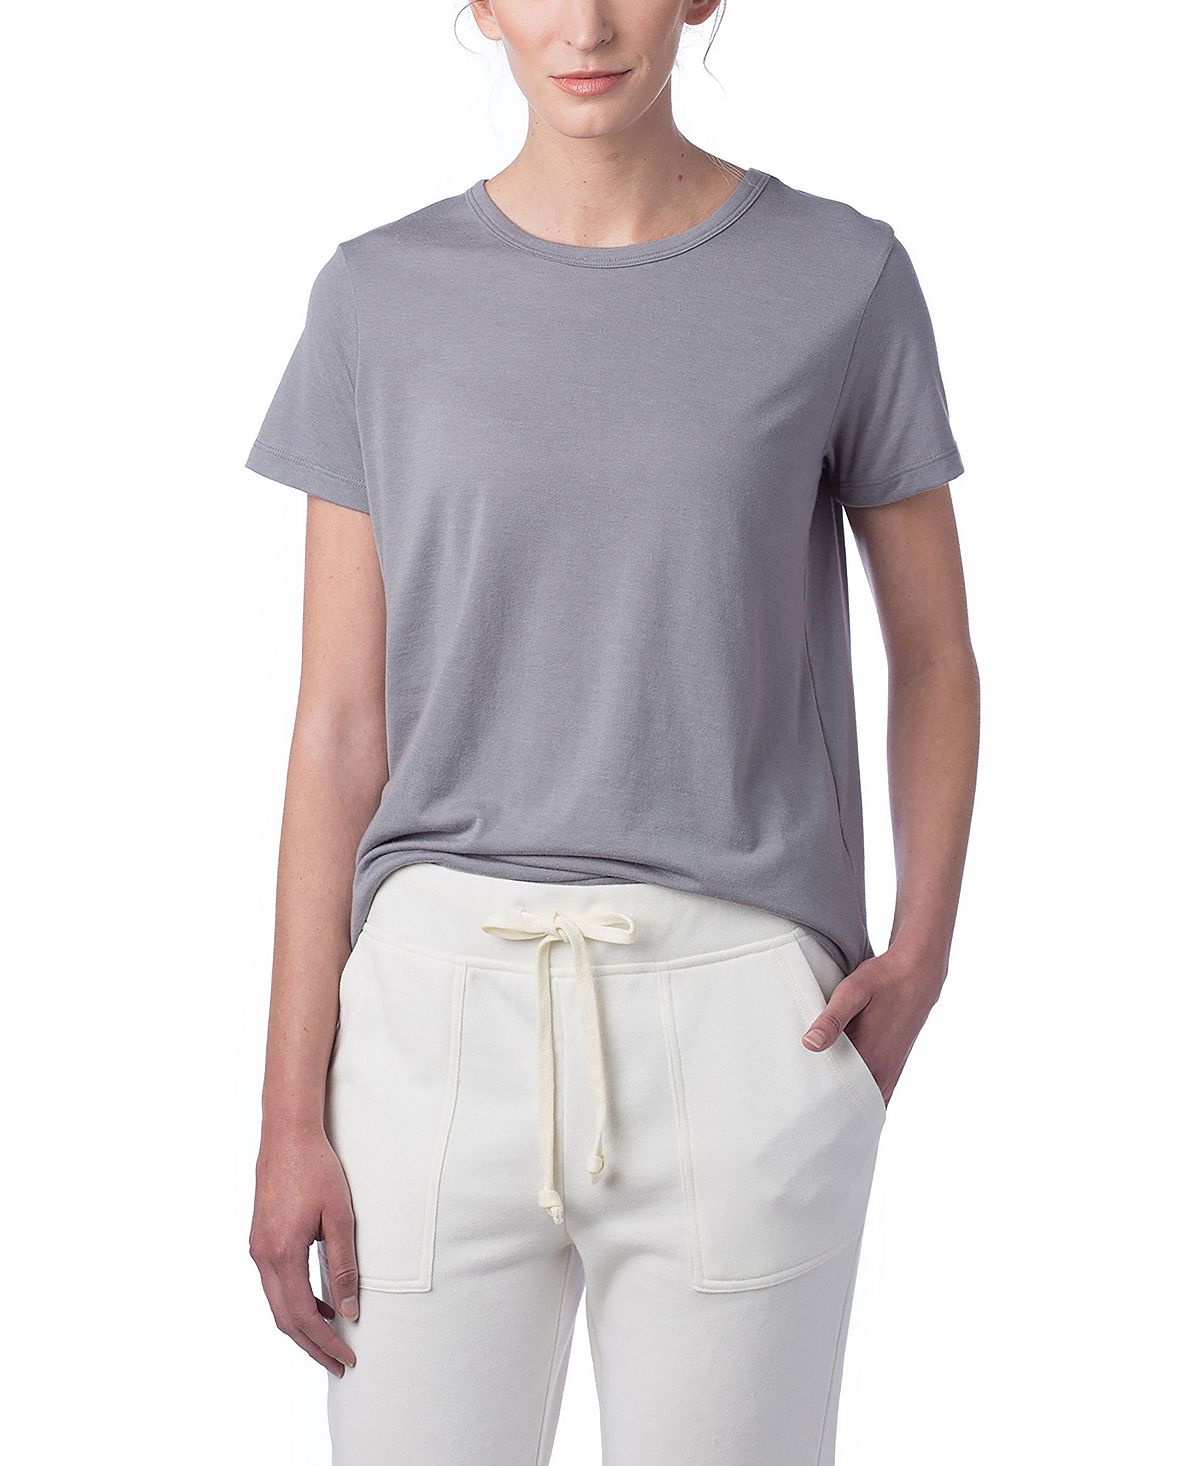 Женская футболка Tri-Blend Crew из модала Macy's